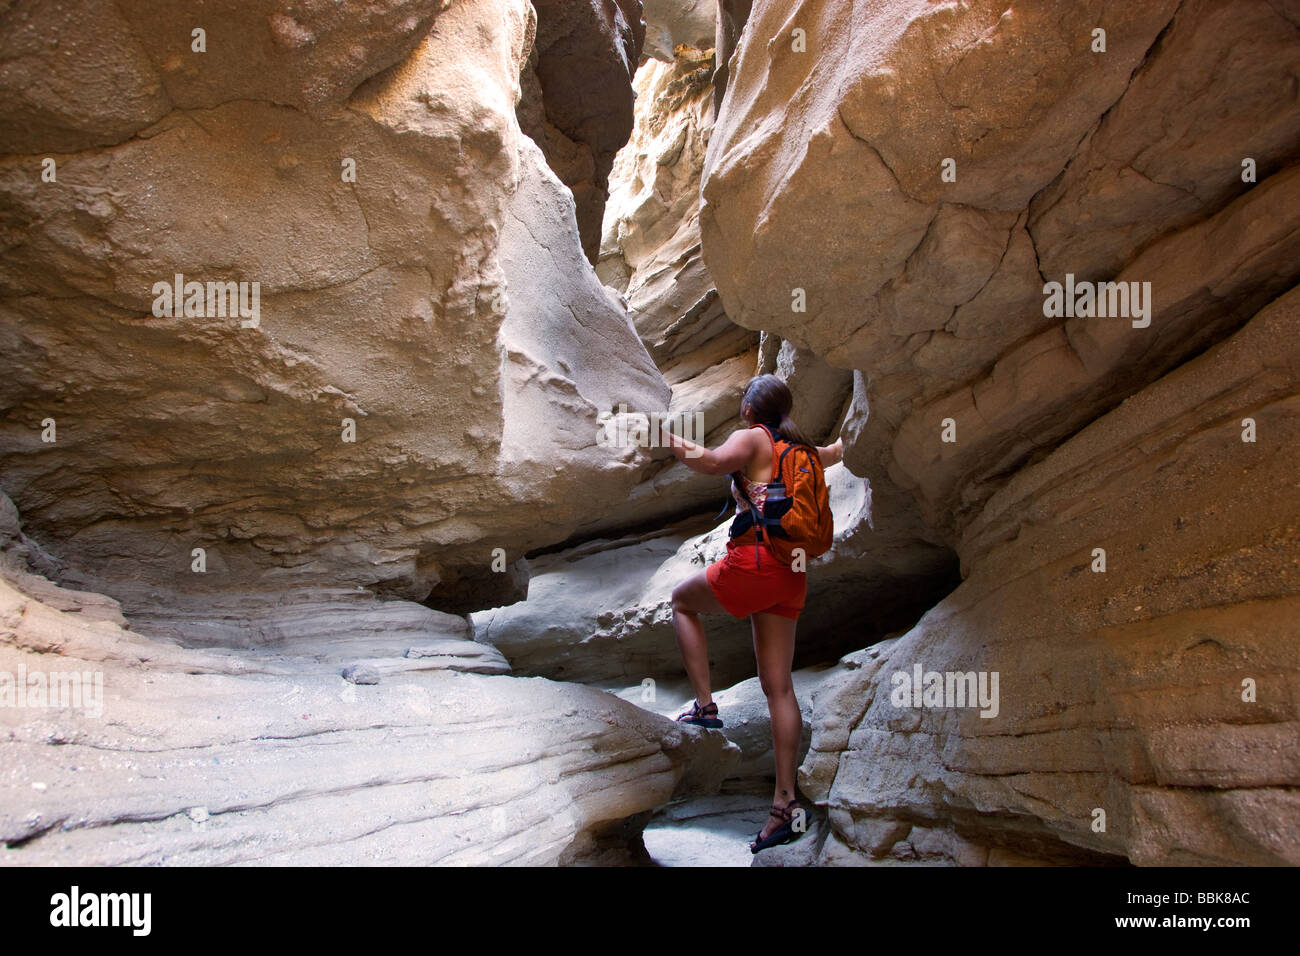 Ein Wanderer im Slotcanyon in Kalifornien Anza Borrego Desert State Park-Modell veröffentlicht Stockfoto